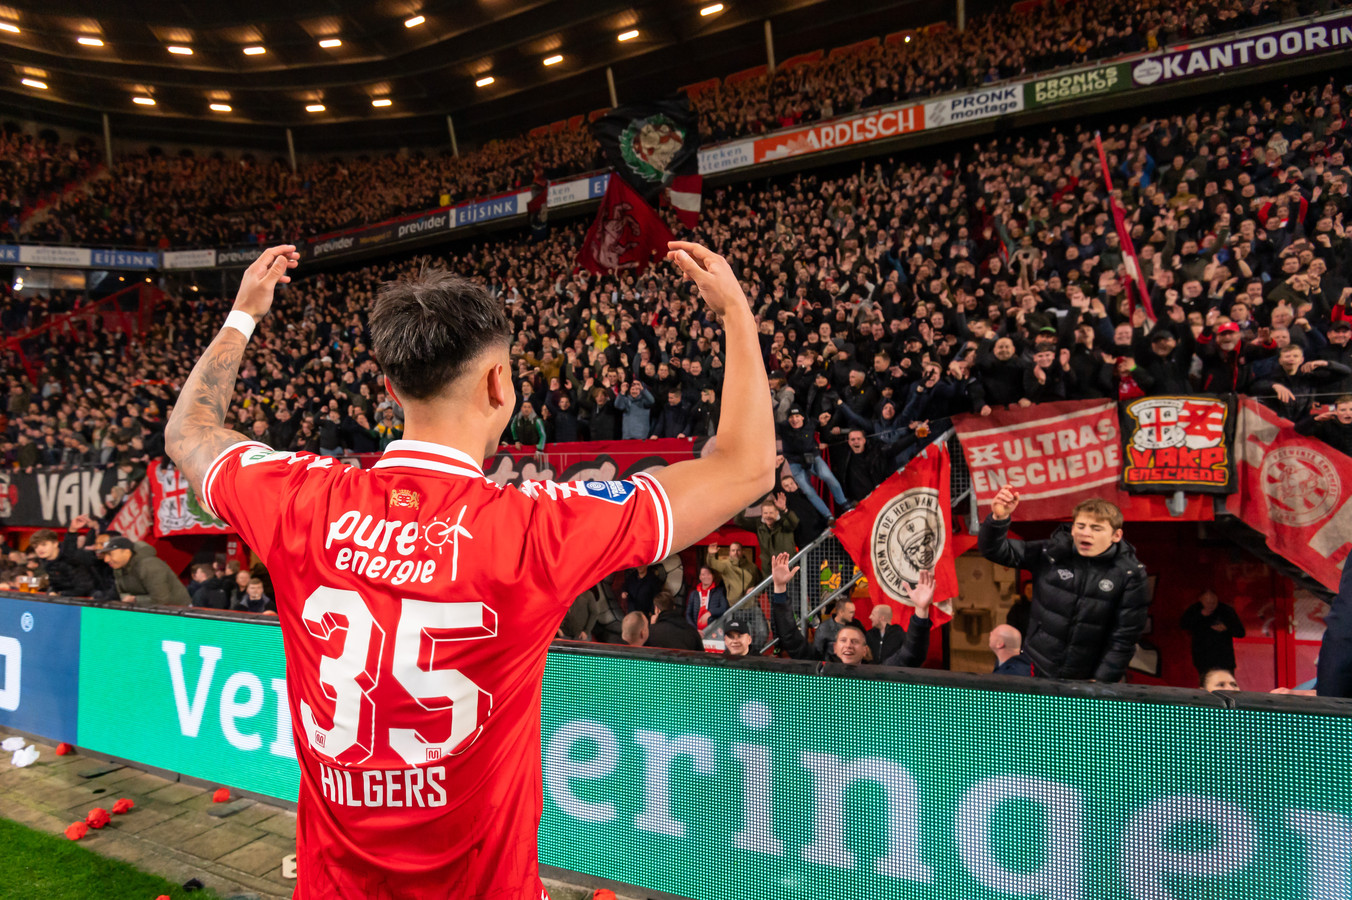 Mees Hilgers is de held van de avond, hij maakte de winnende voor FC Twente.